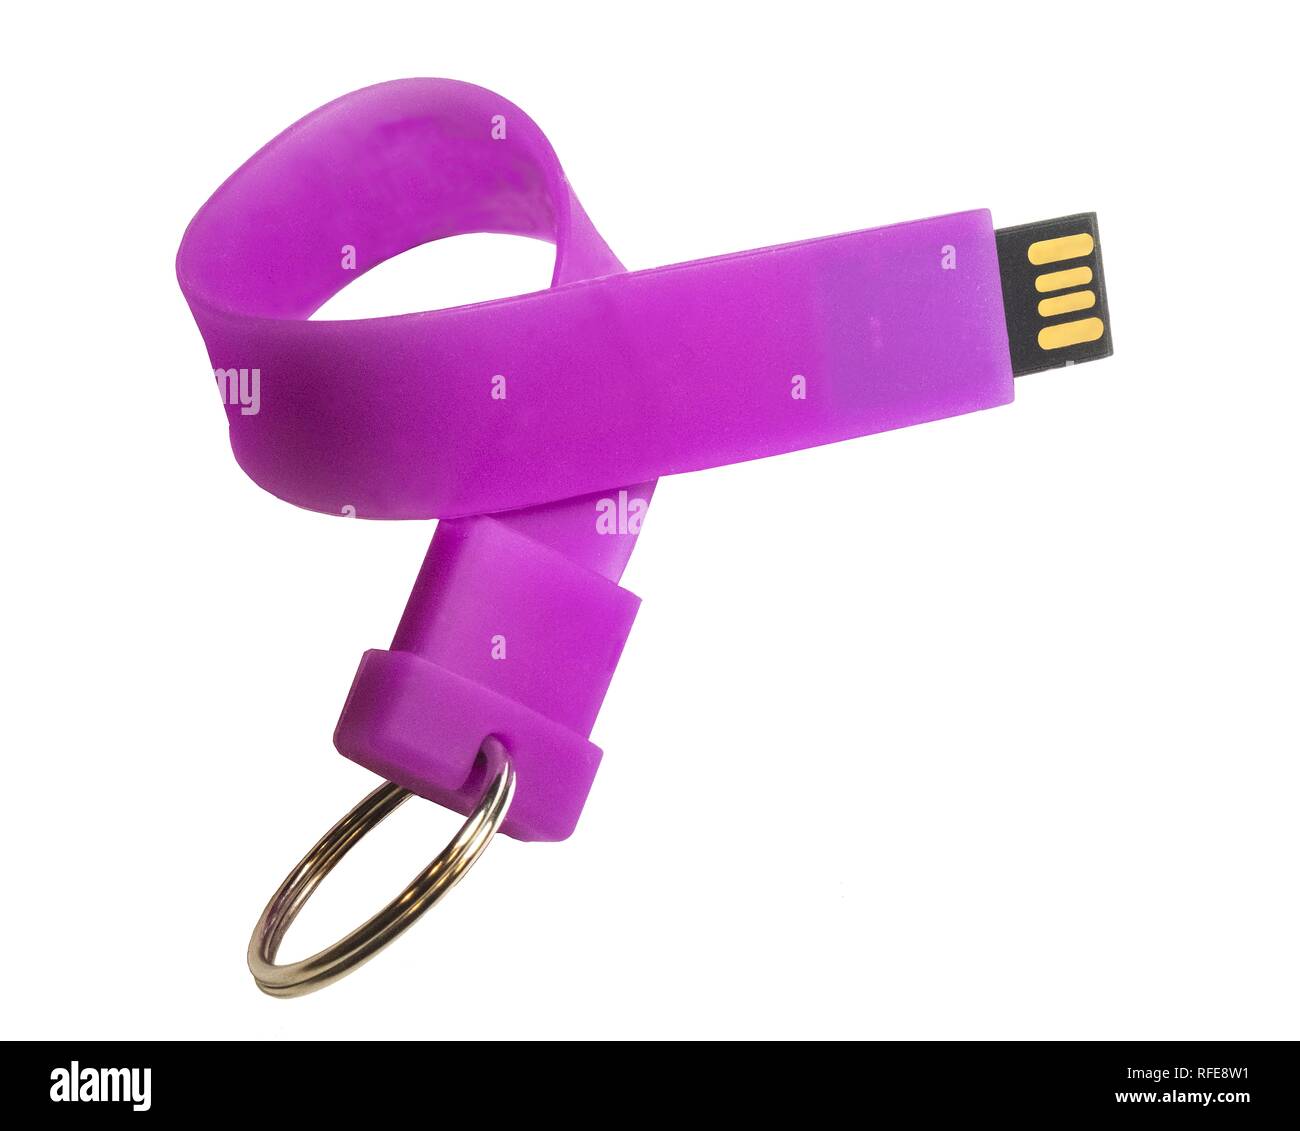 Usb-Stick in Form einer flexiblen Silikon band Schlüsselanhänger mit  Schlüsselring Stockfotografie - Alamy